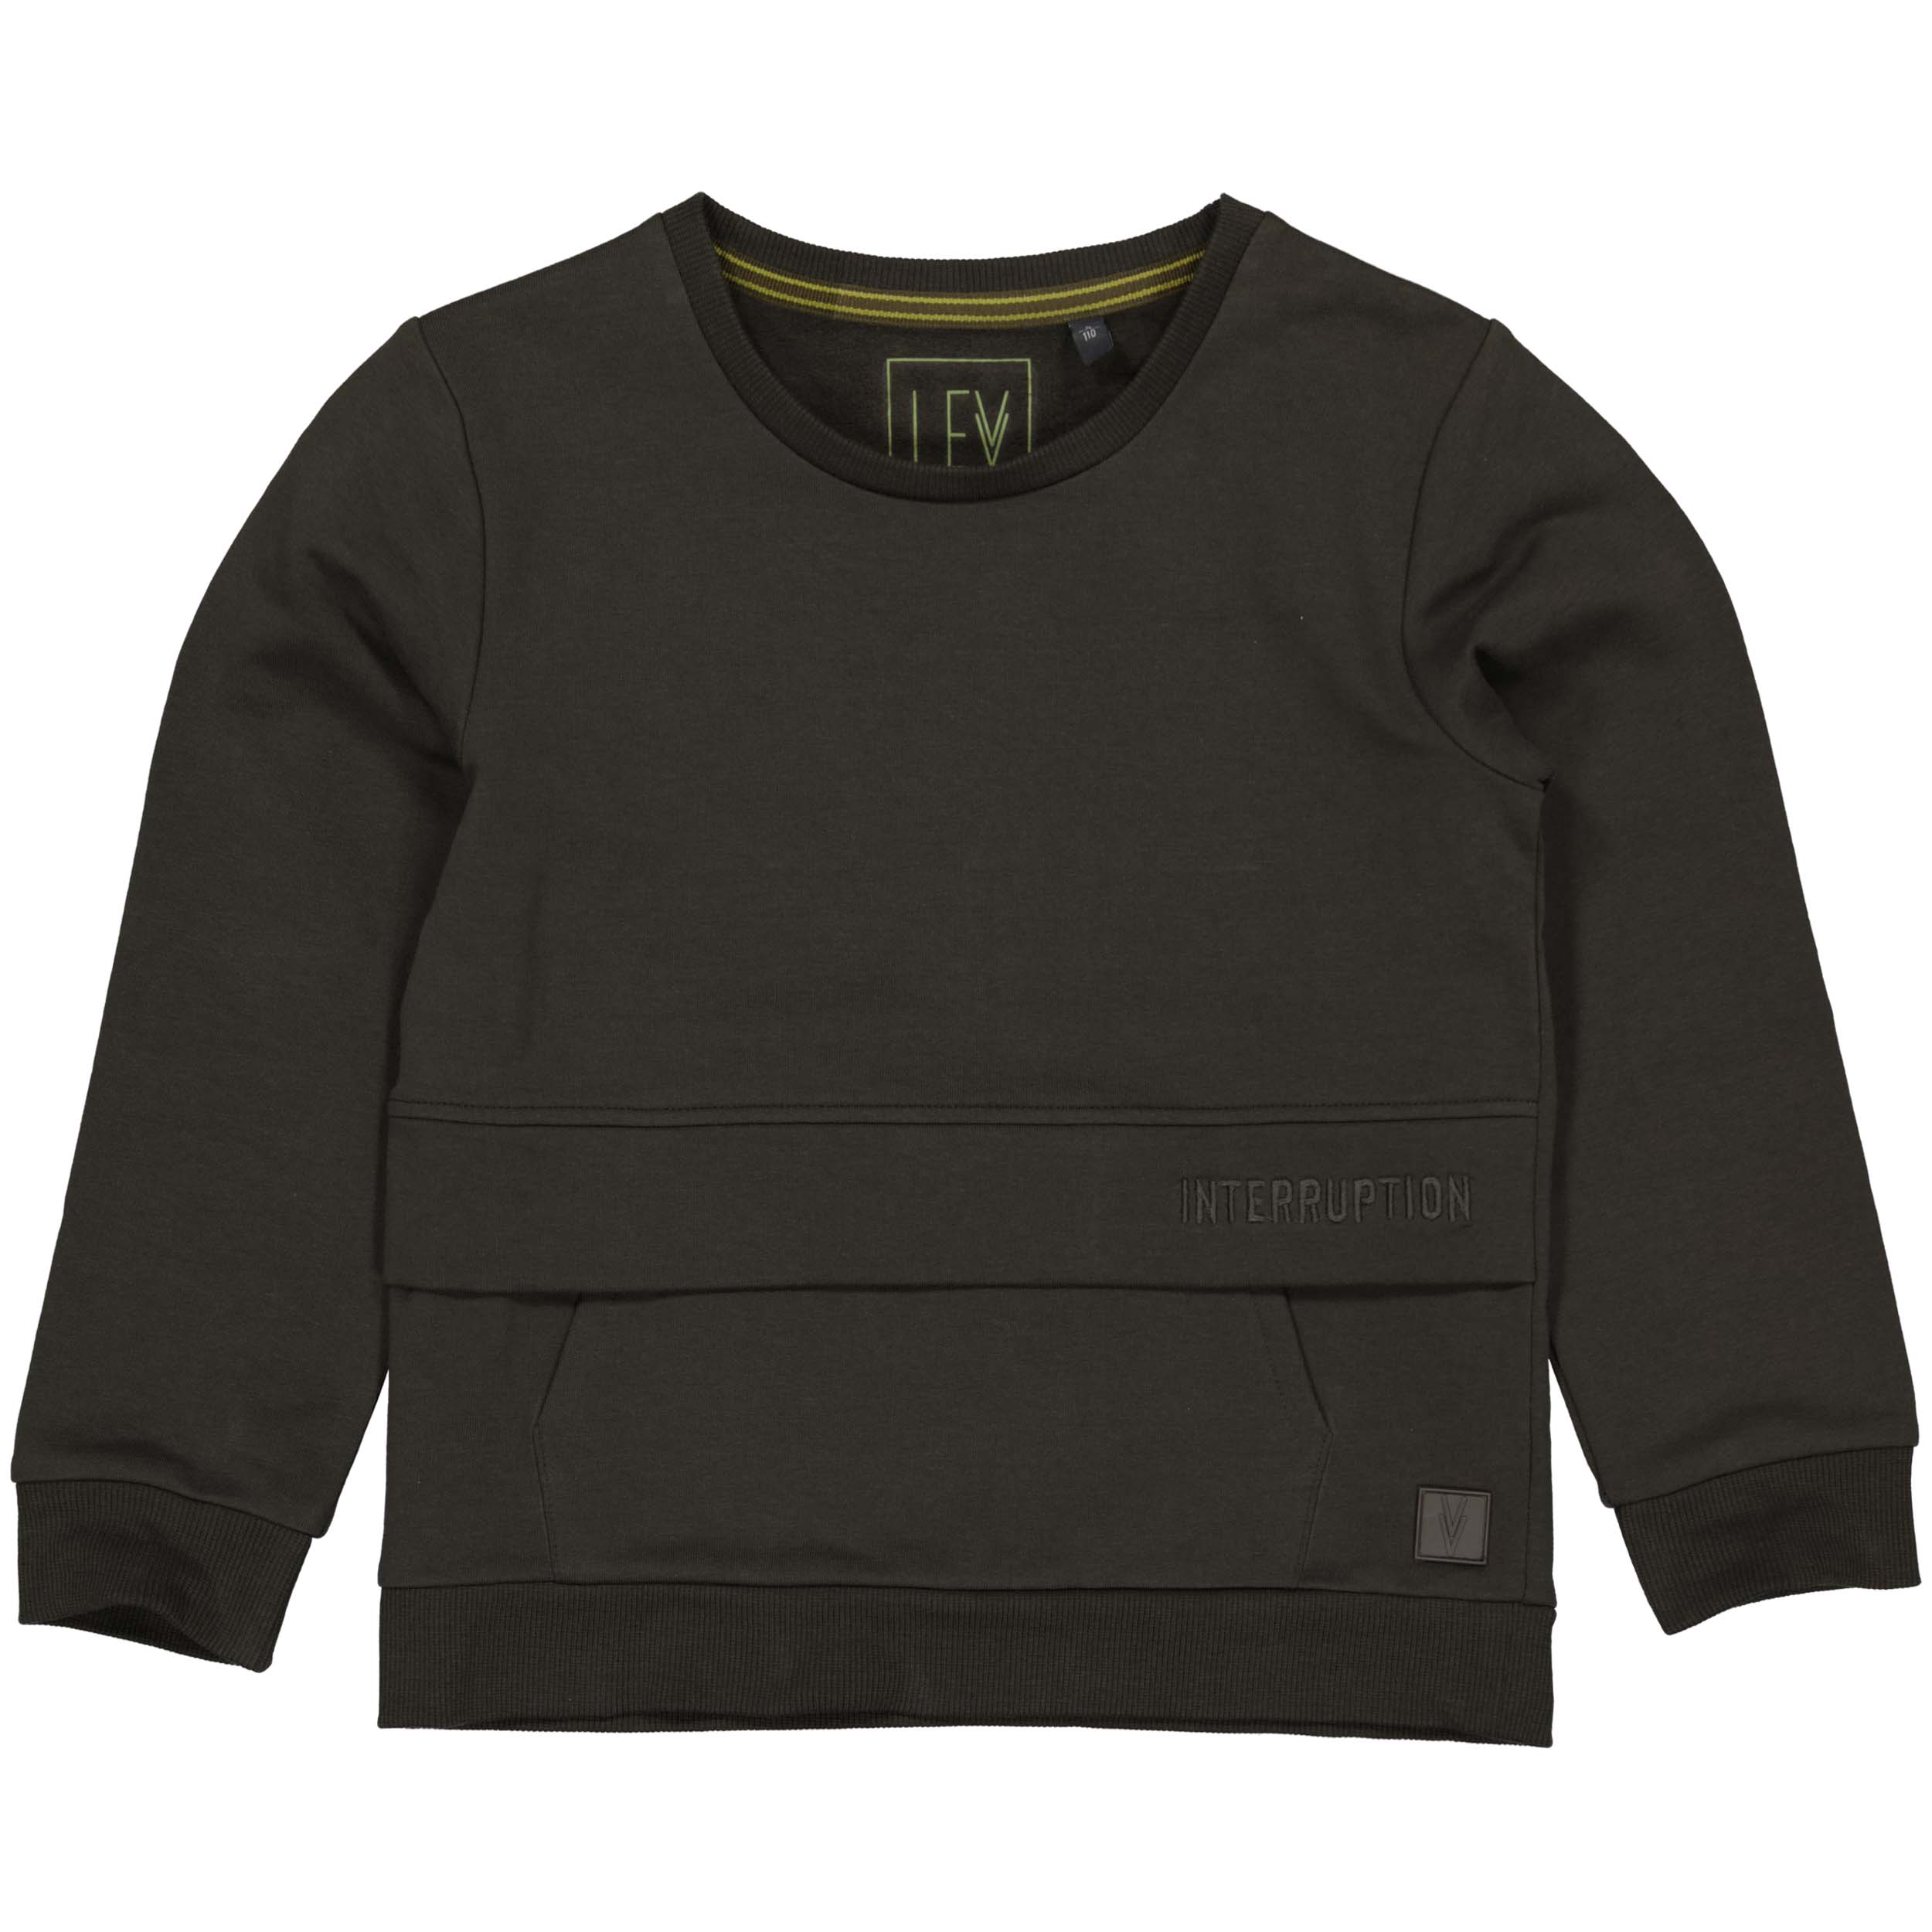 Jongens Sweater BINKW222 van Little Levv in de kleur Black Ink in maat 128.